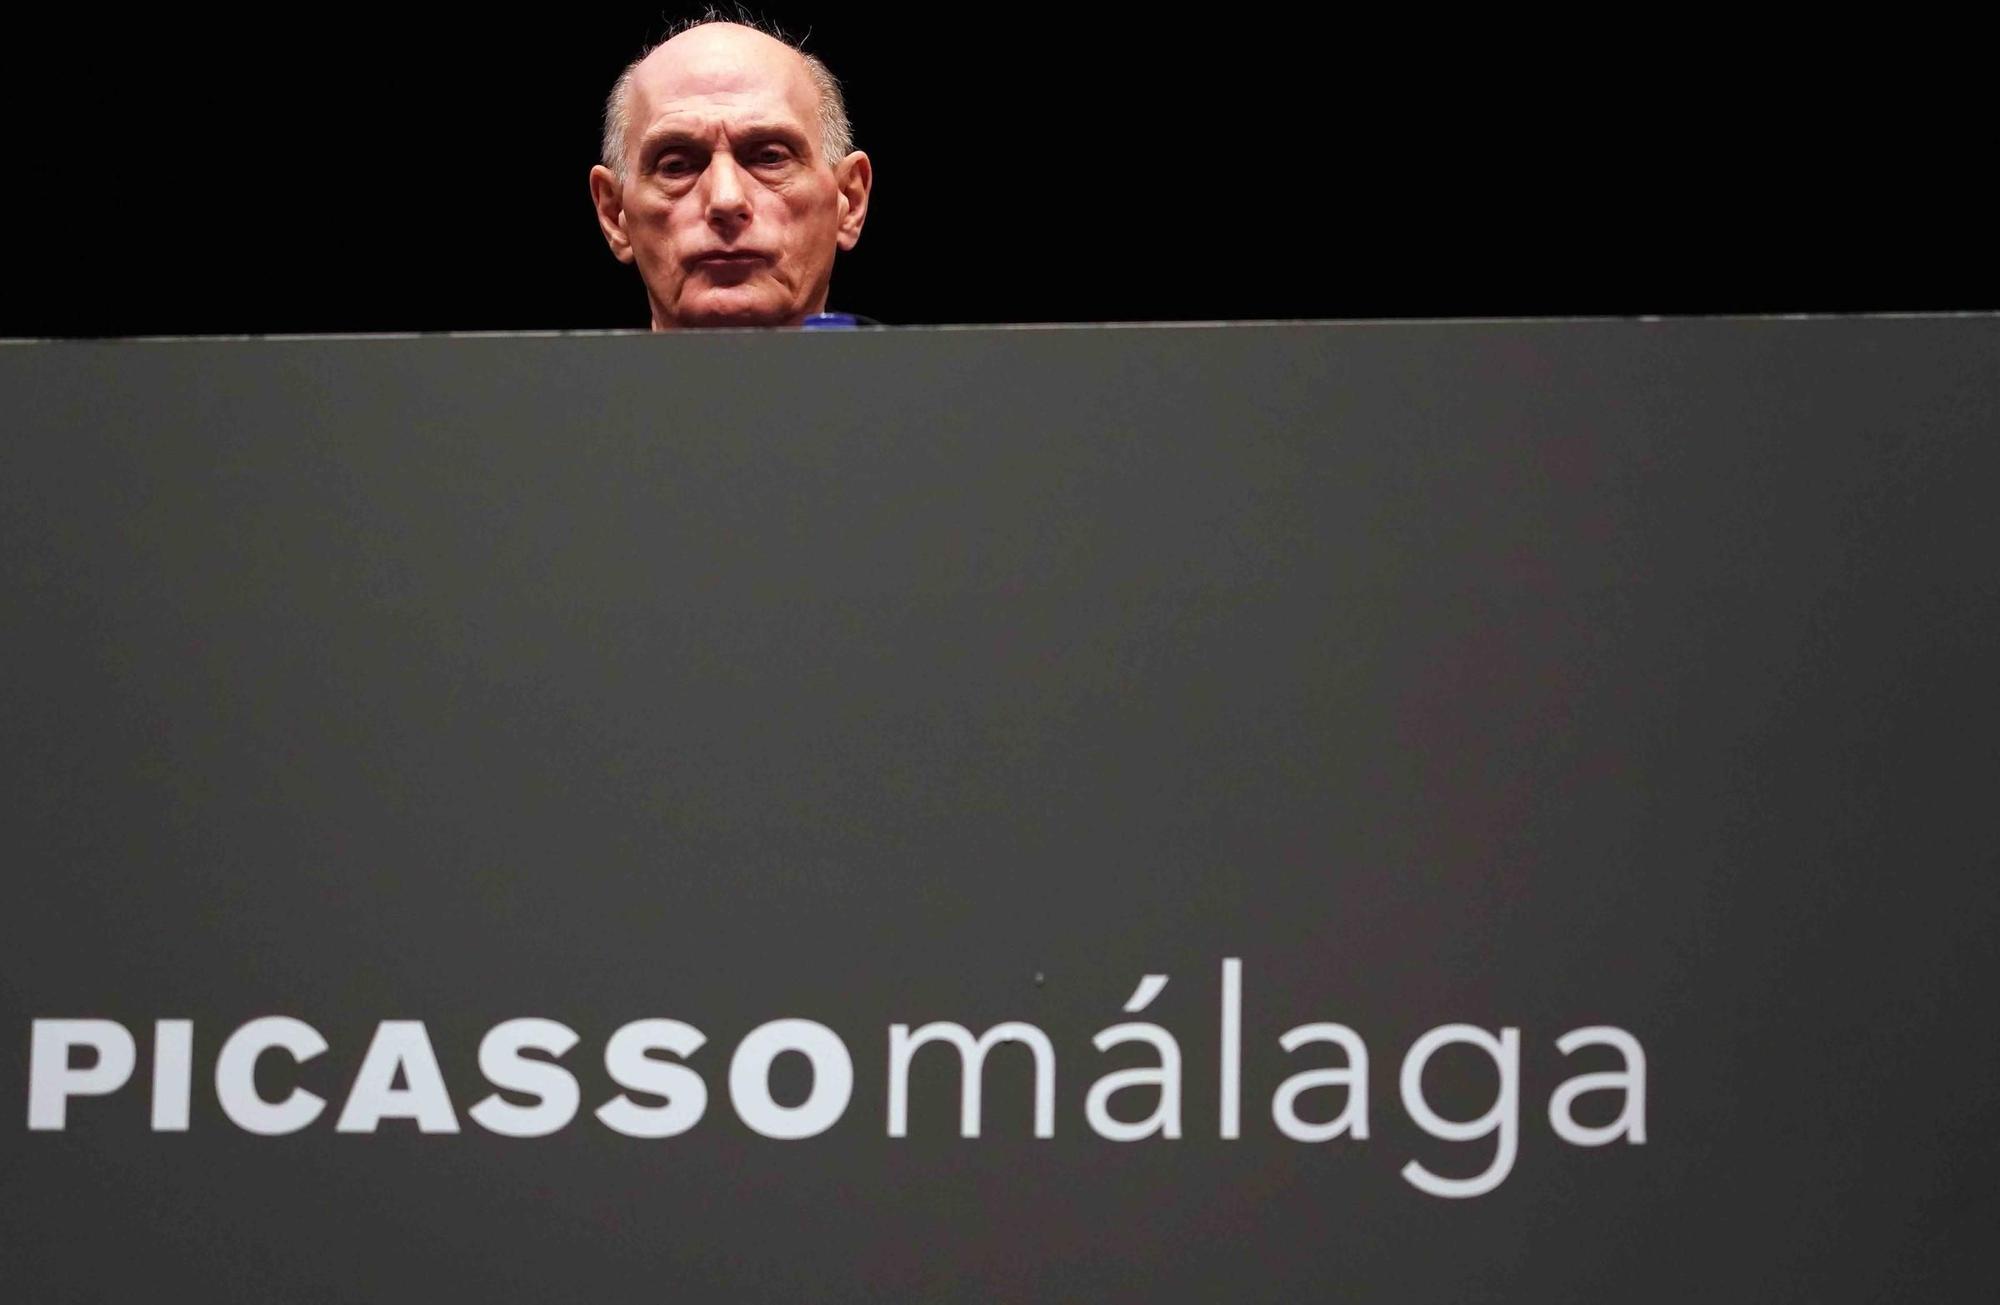 Presentación de Miguel López-Remiro como nuevo director artístico del Museo Picasso Málaga